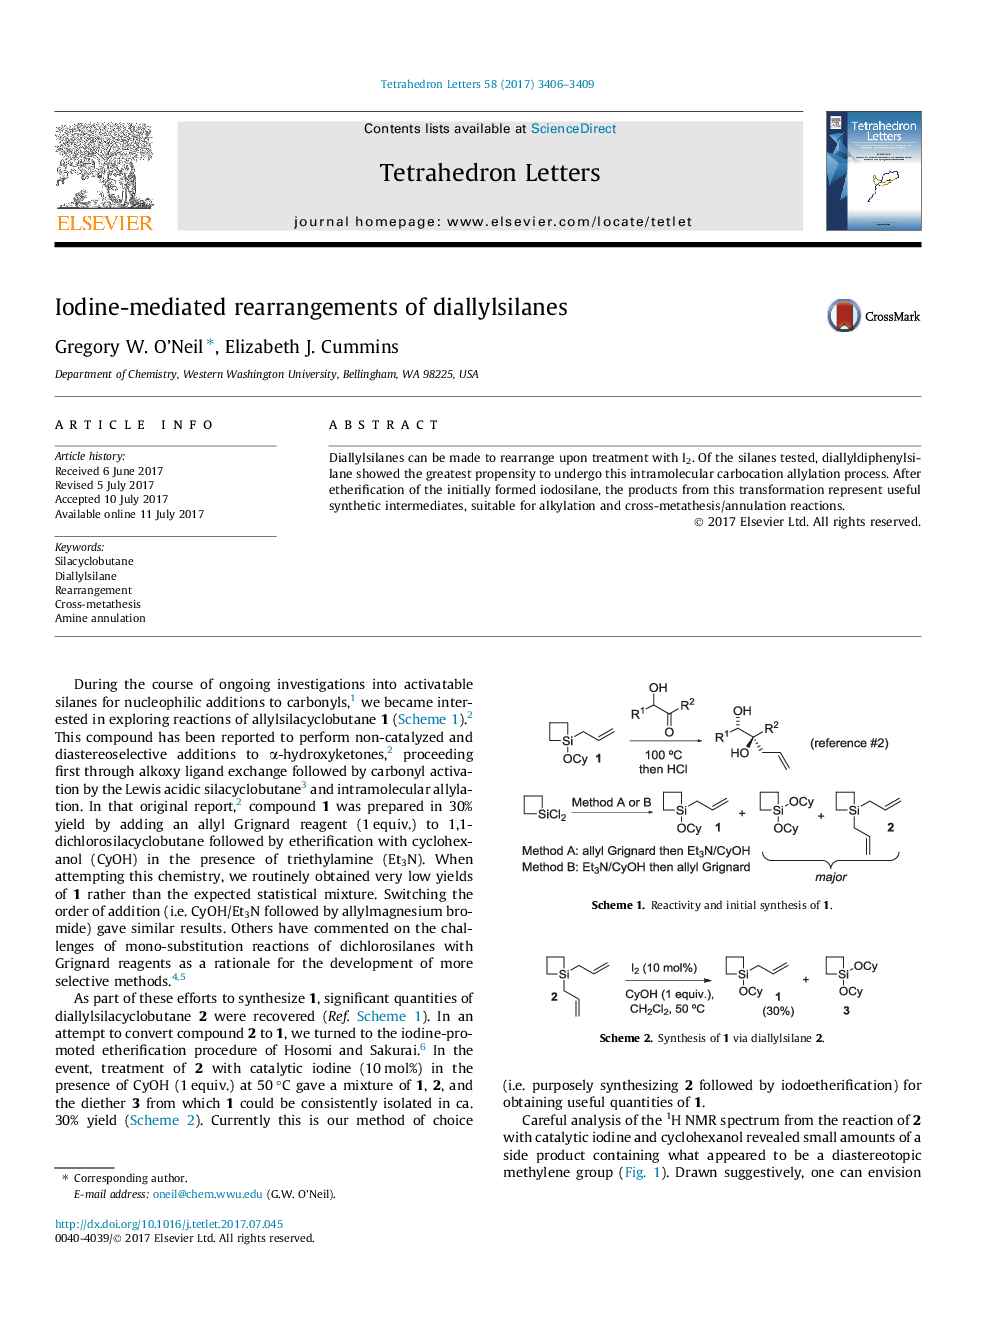 ترکیبات دی اتیل سیلان ها توسط واسطه ید 